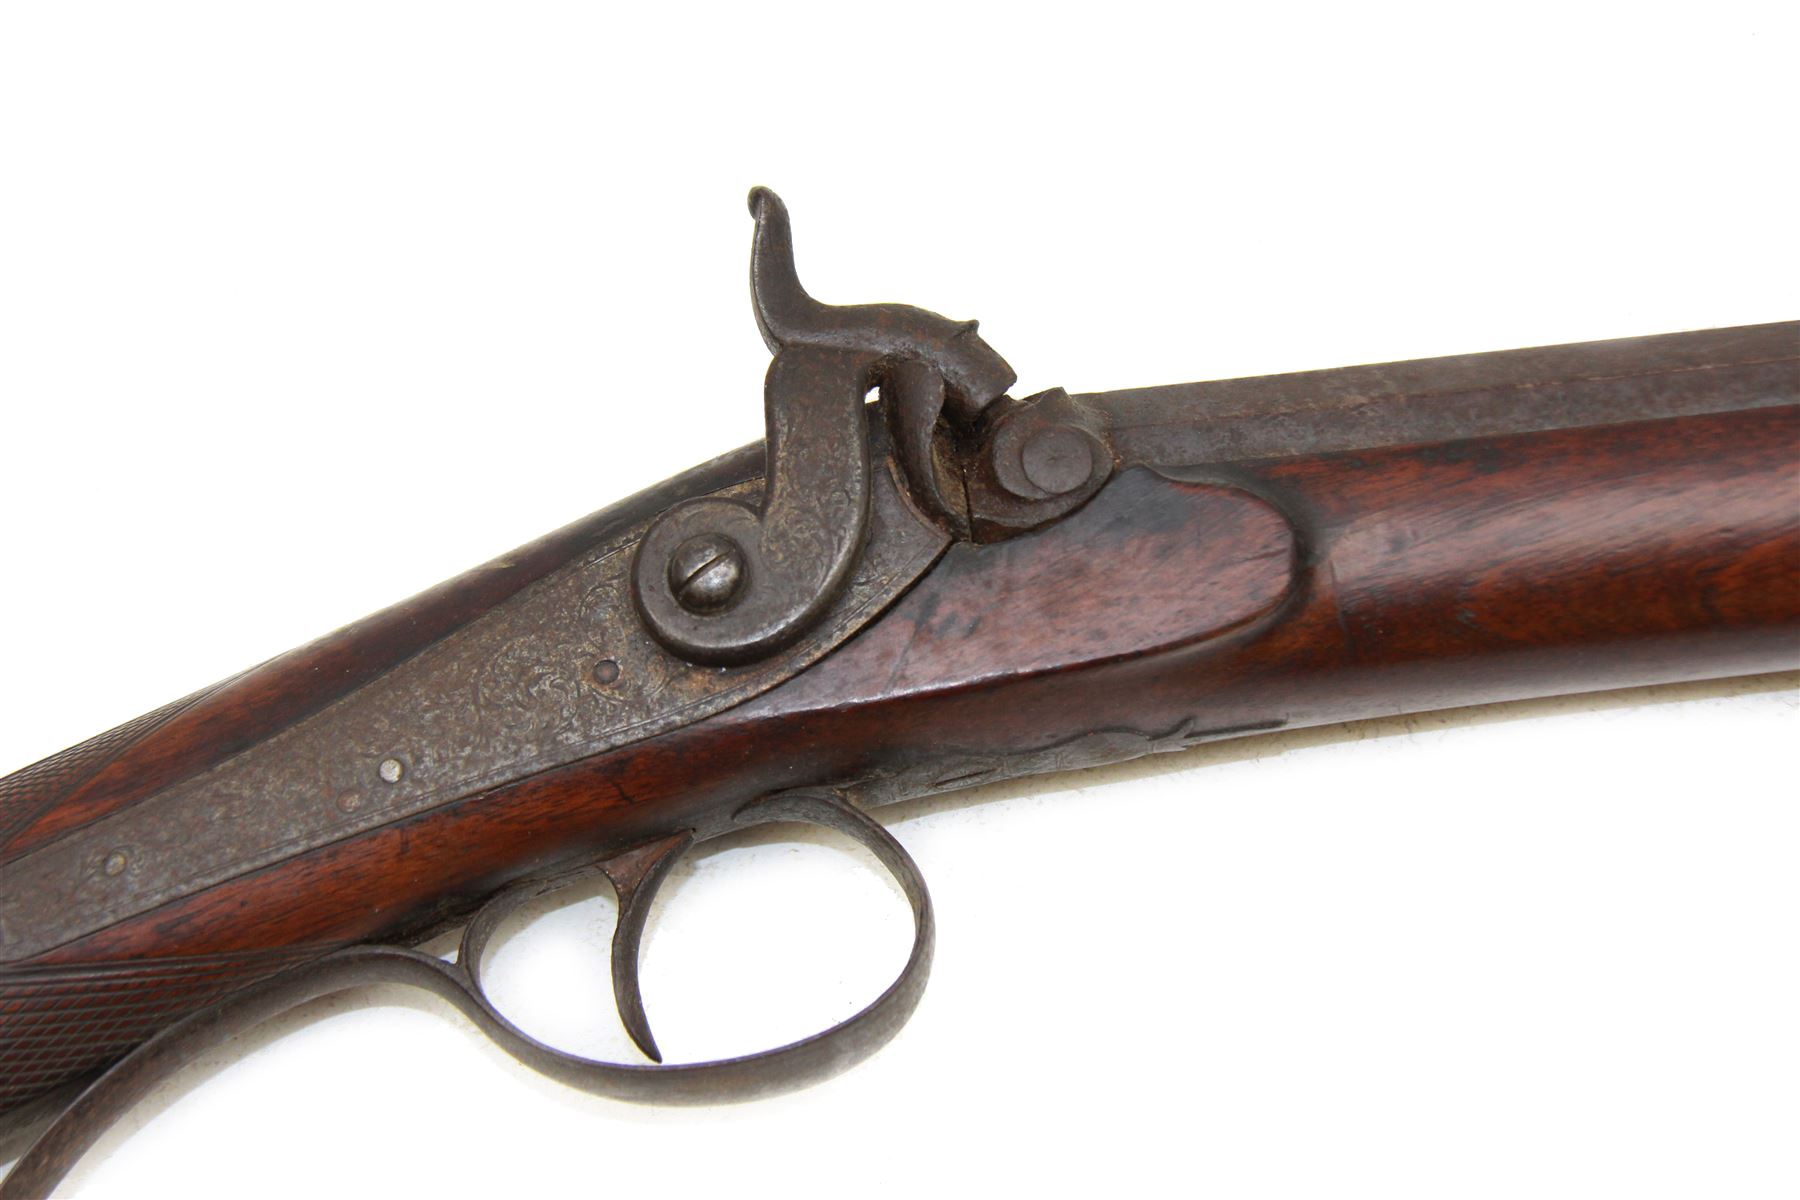 19th century single barrel percussion fire shotgun